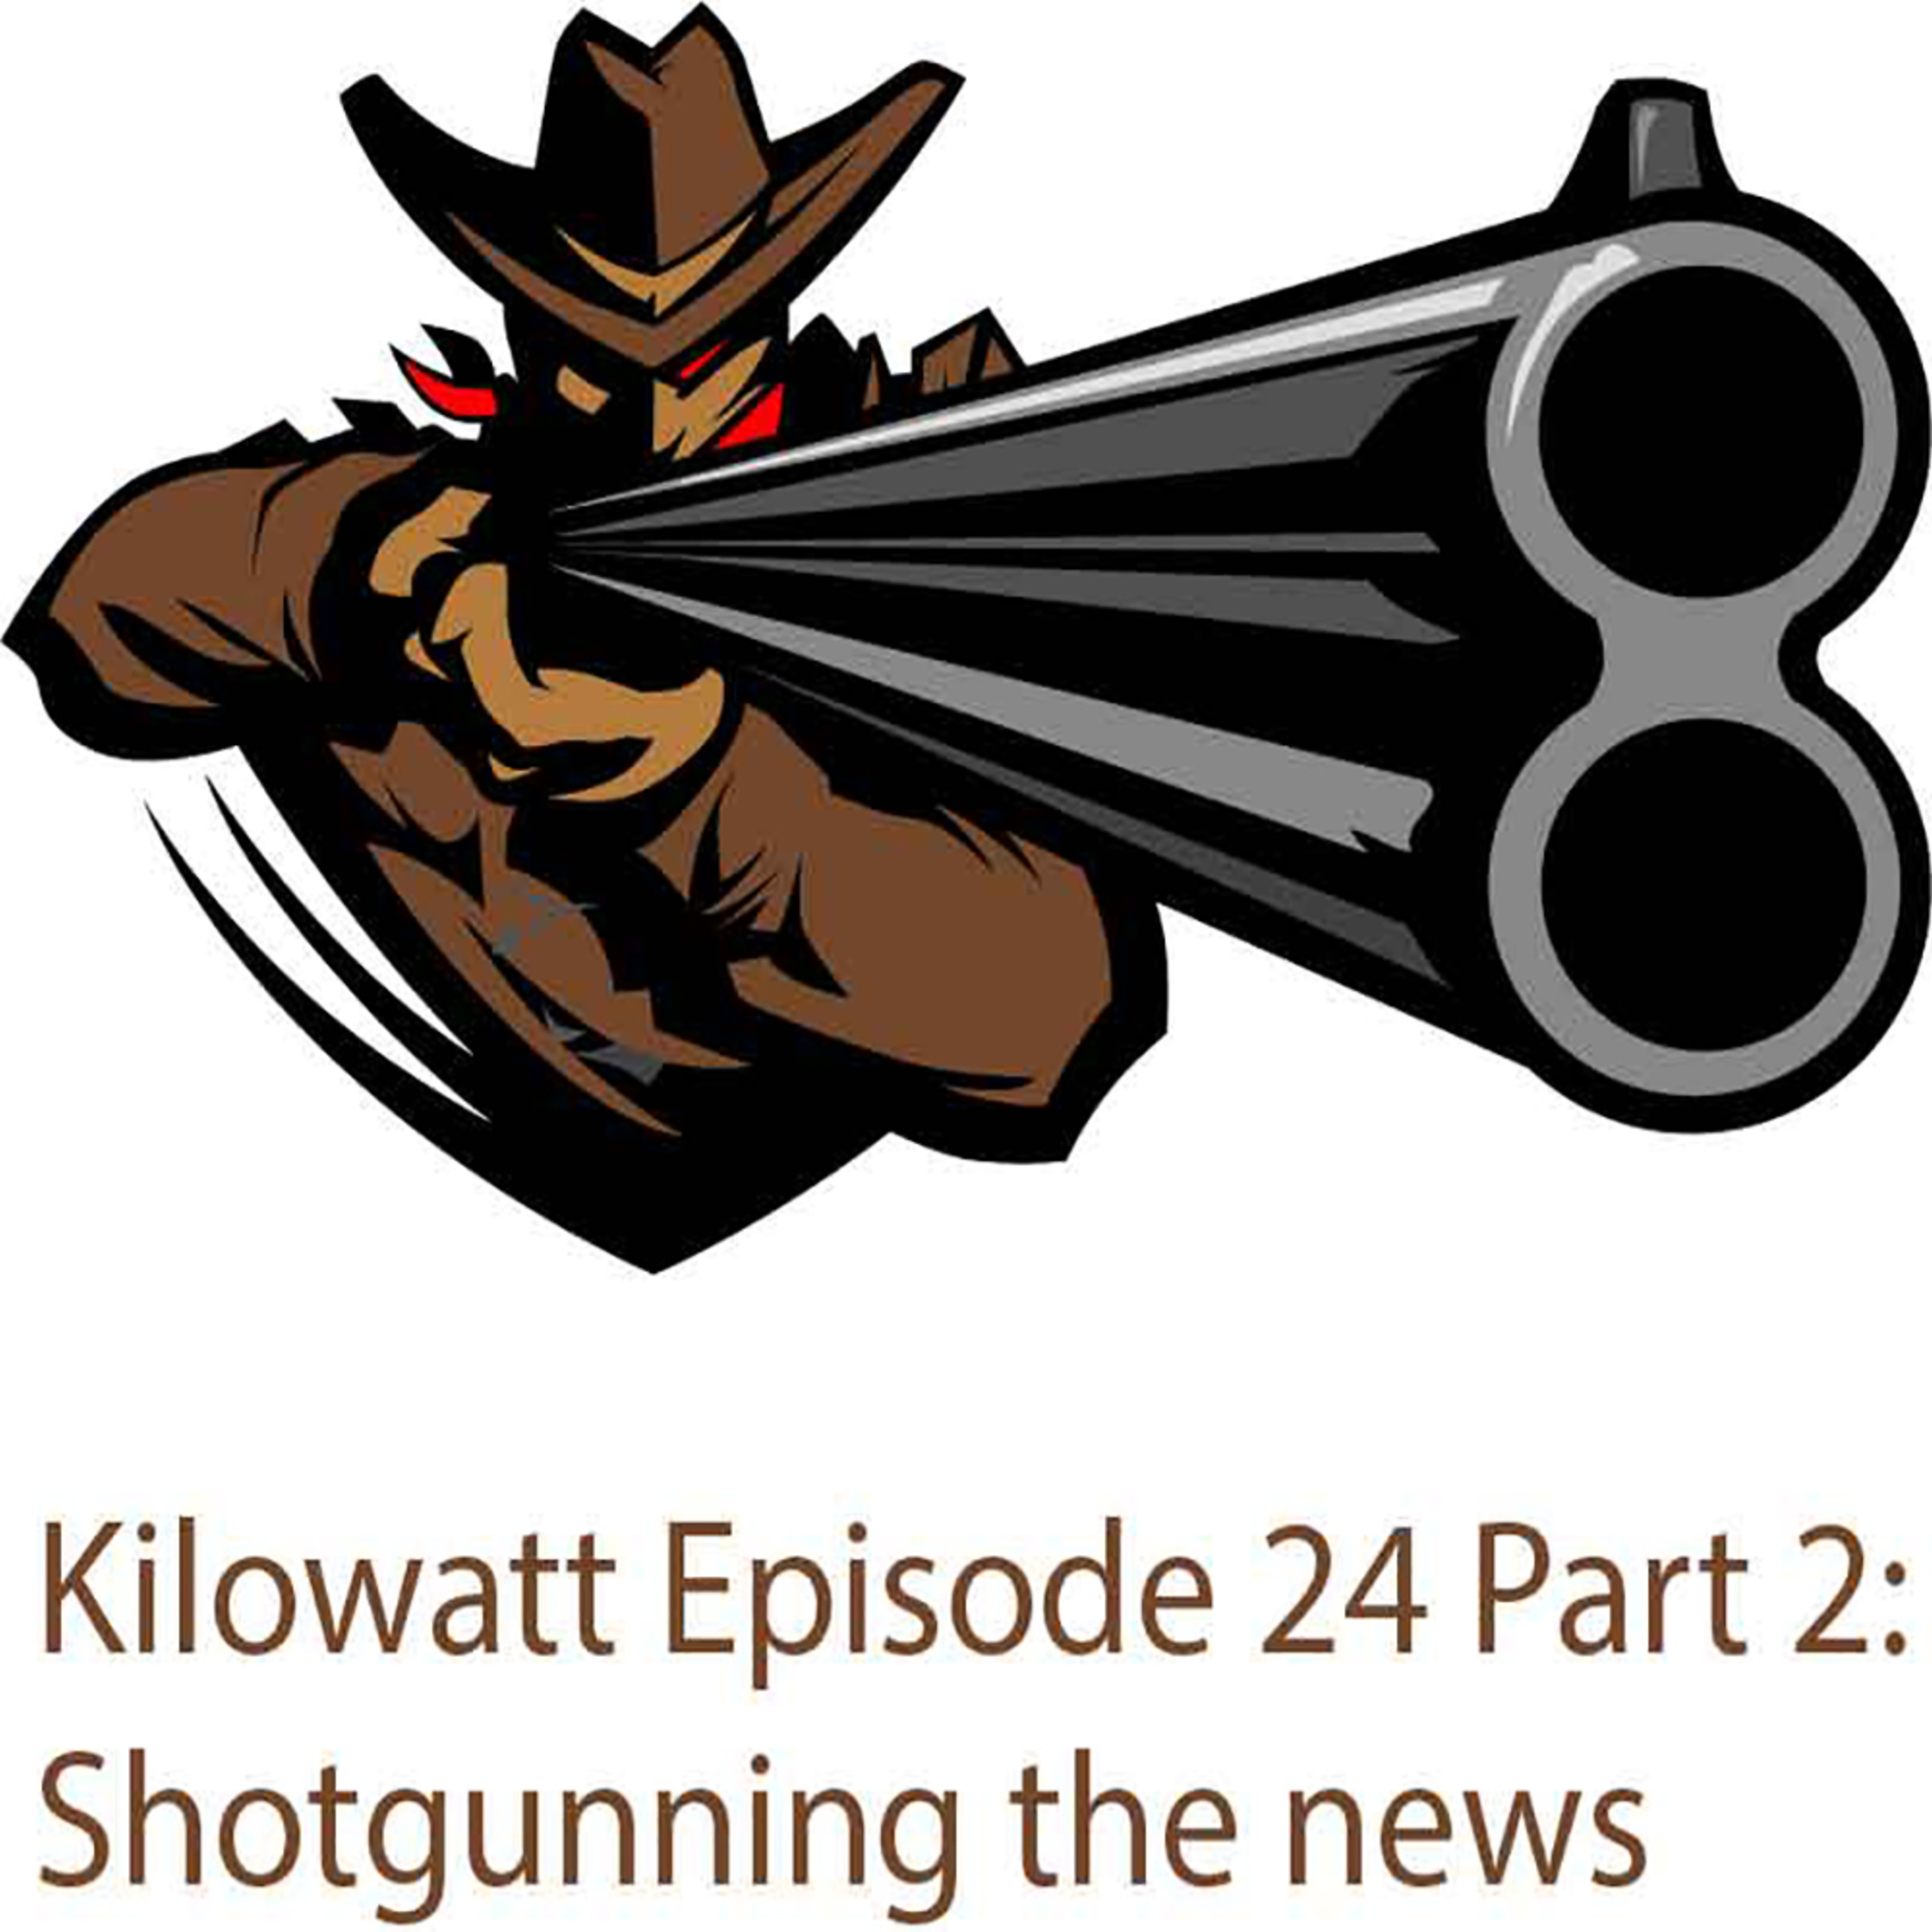 Shotgunning the News